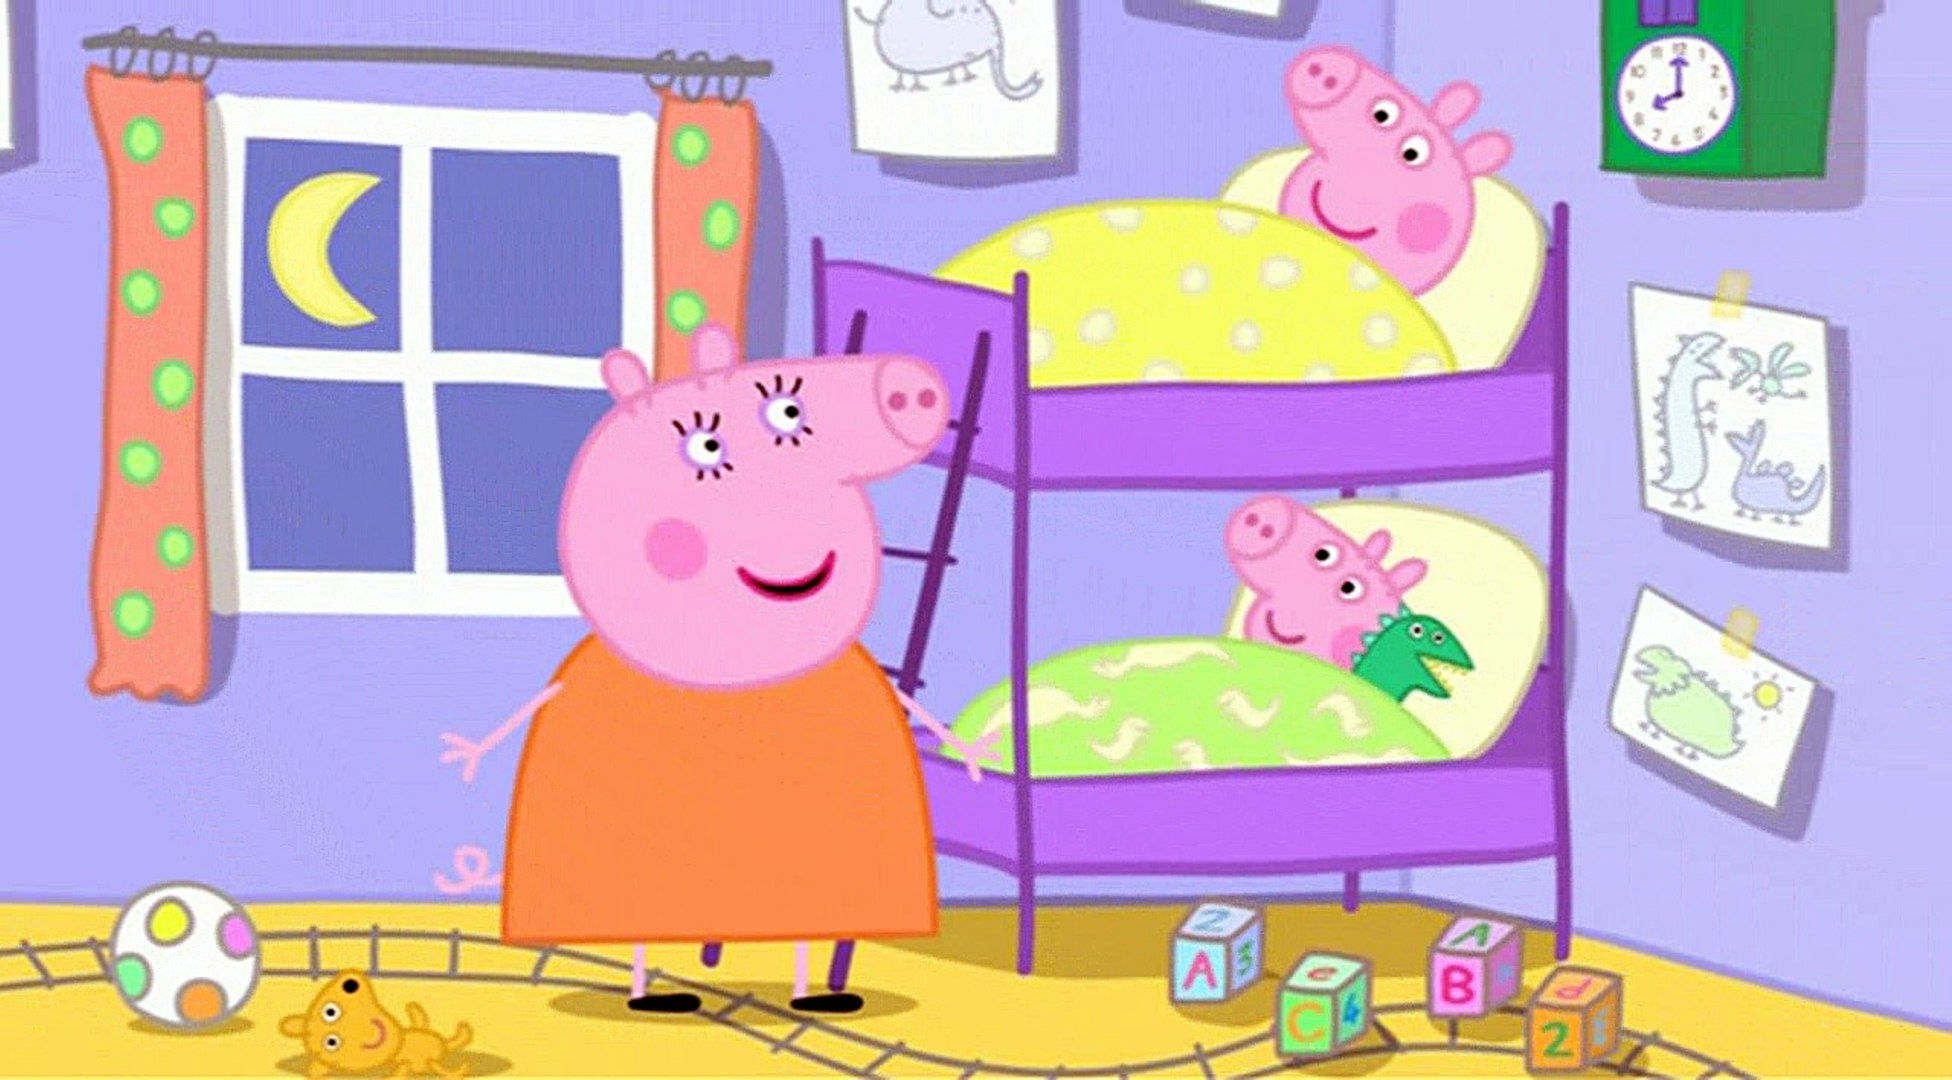 Дом свинки пеппы и ее семьи. Свинка Пеппа комната Пеппы и Джорджа. Дом свинки Пеппы в мультике. Домик из свинки Пеппы из мультика.